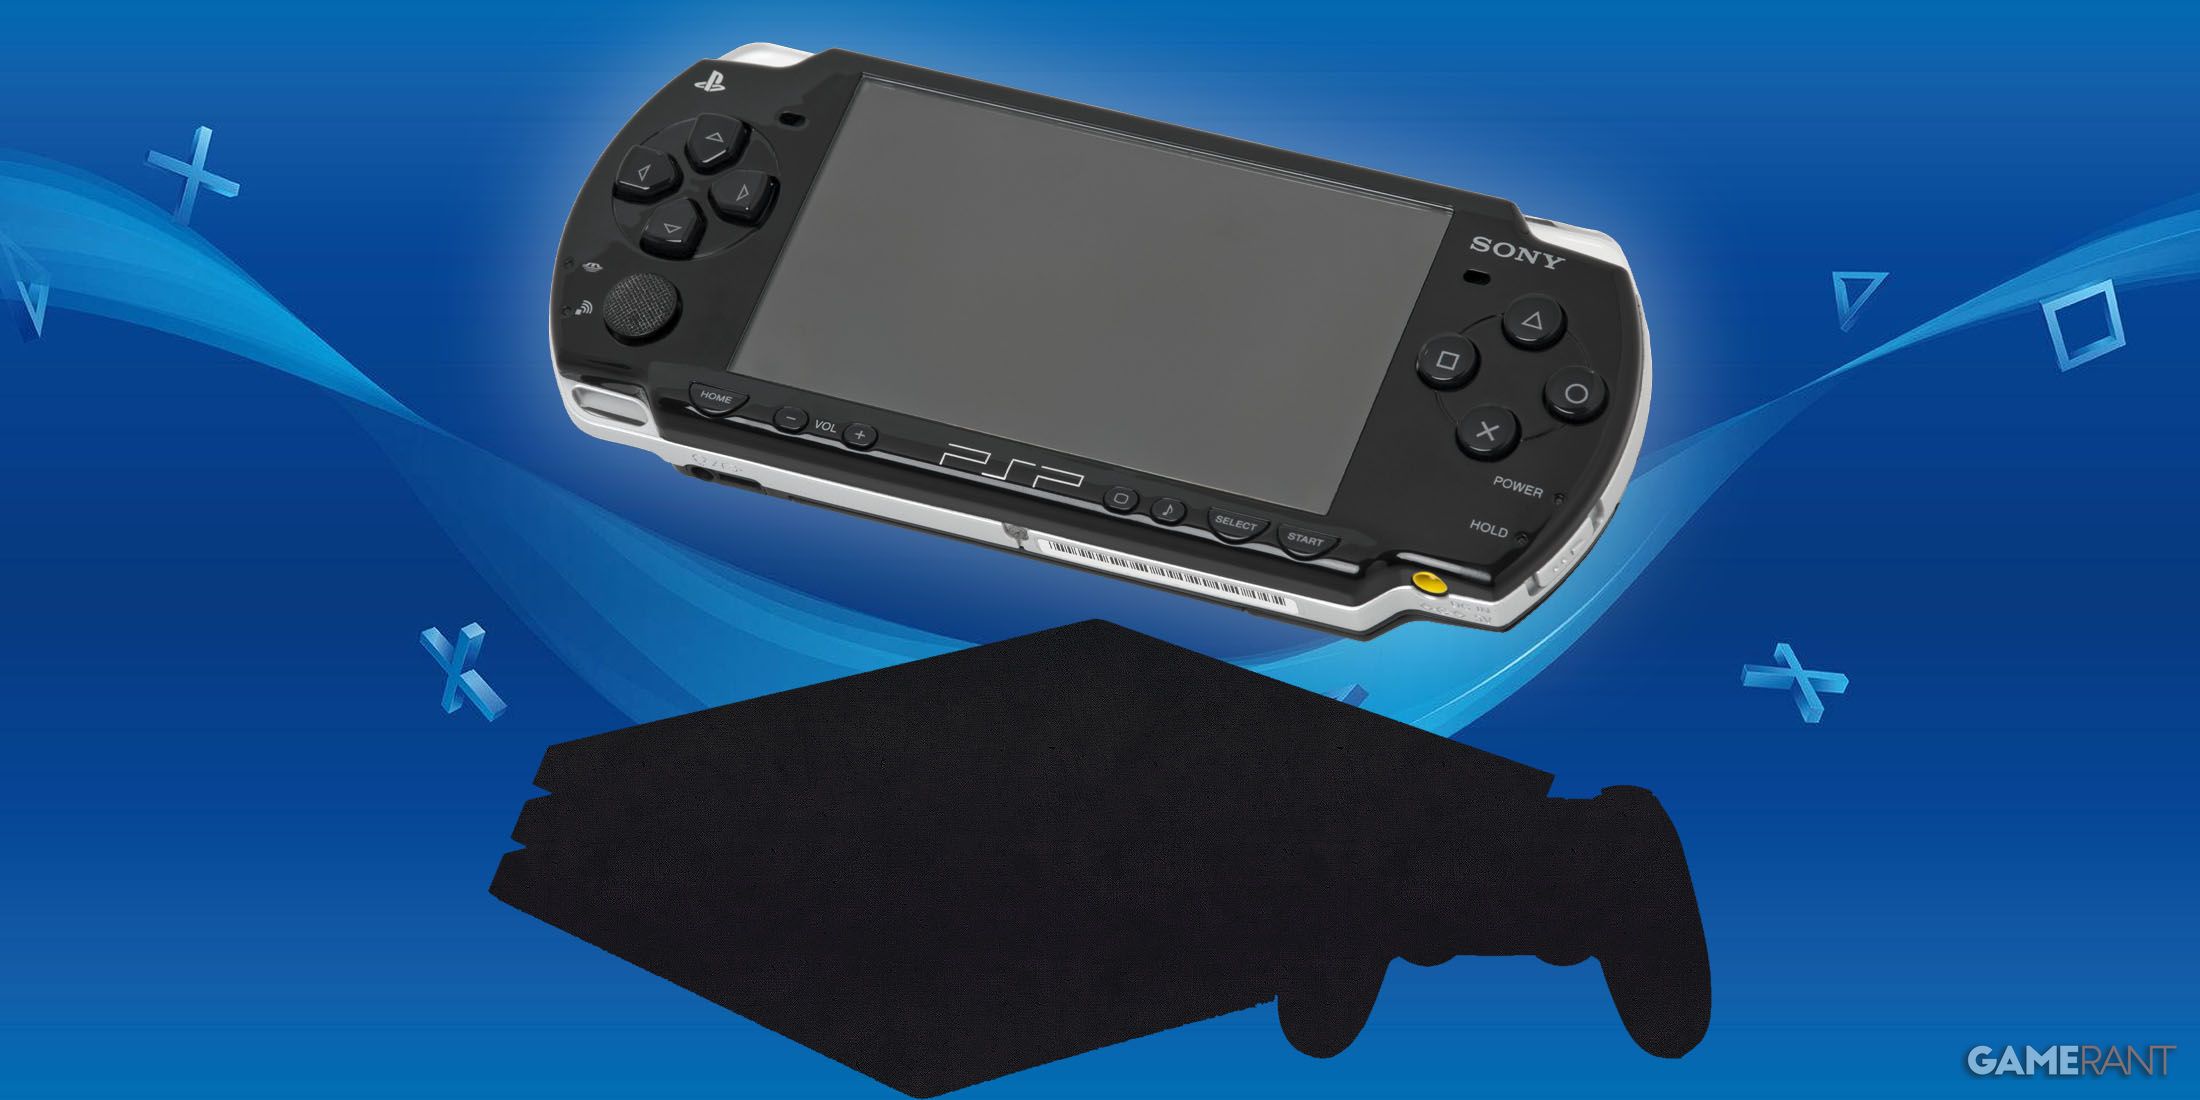 Rumor: Possible New PlayStation Handheld Details Leak Online